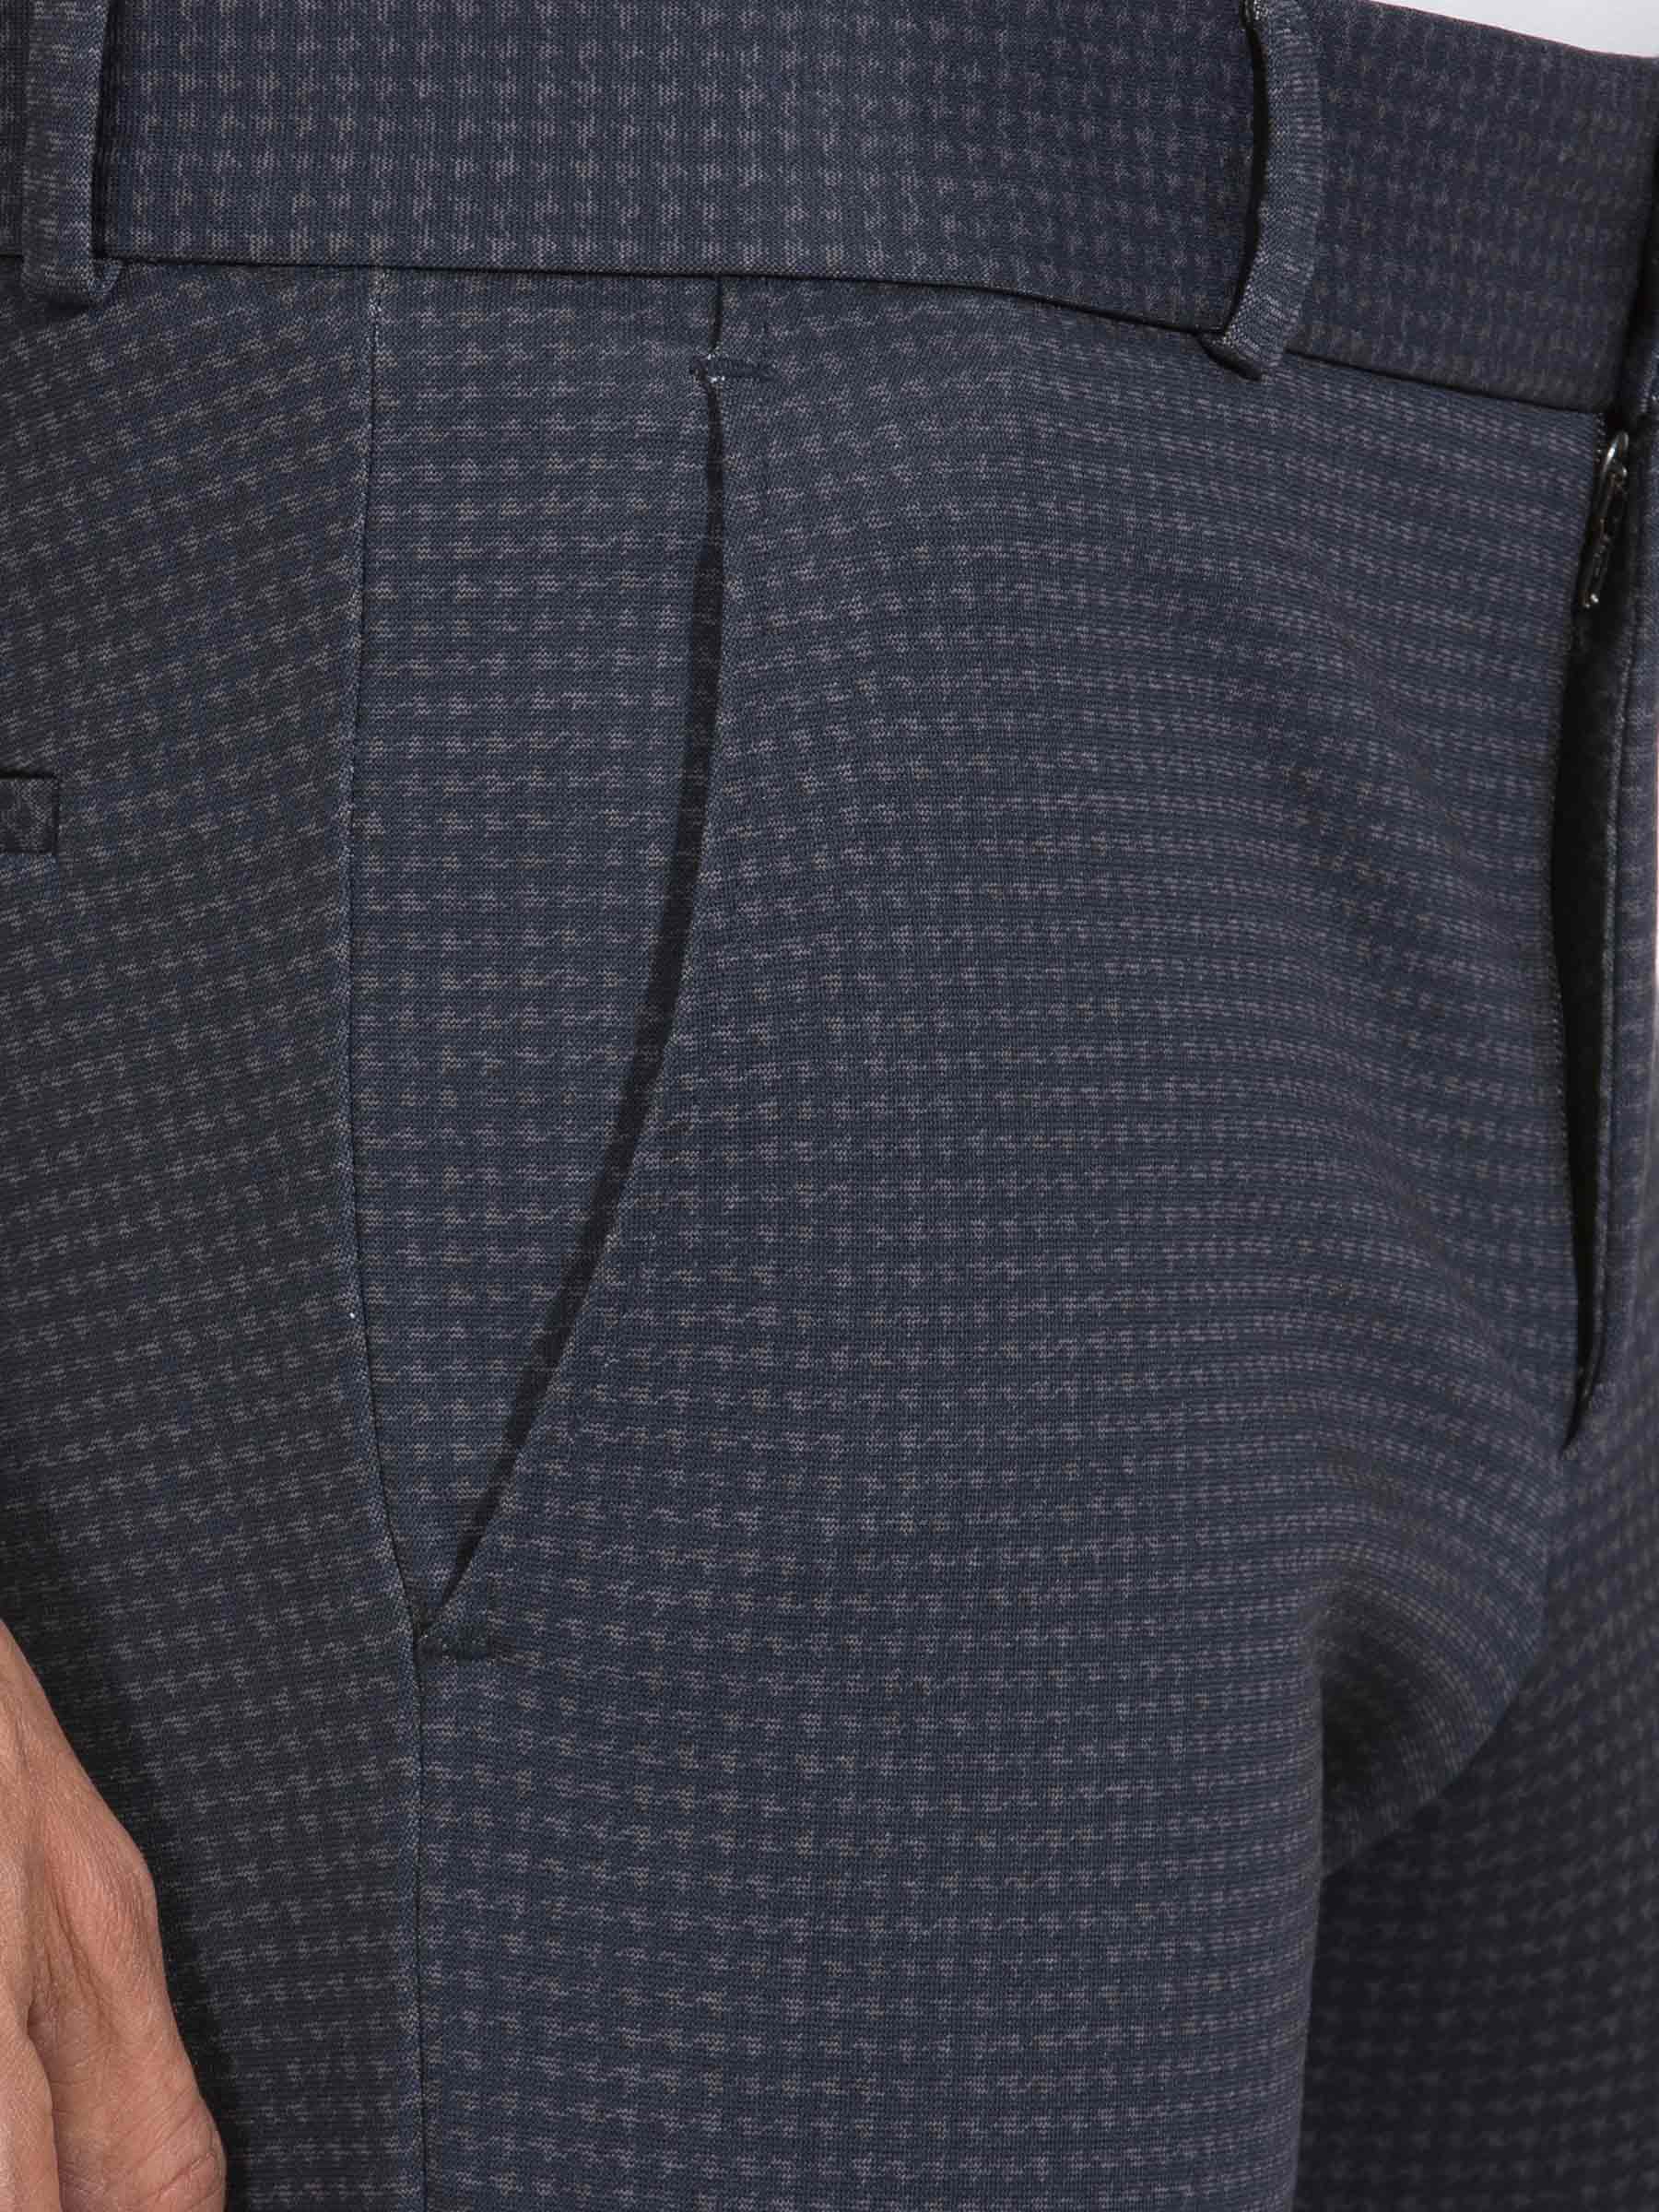 Pantalon 82151 Aleon Navy Grey